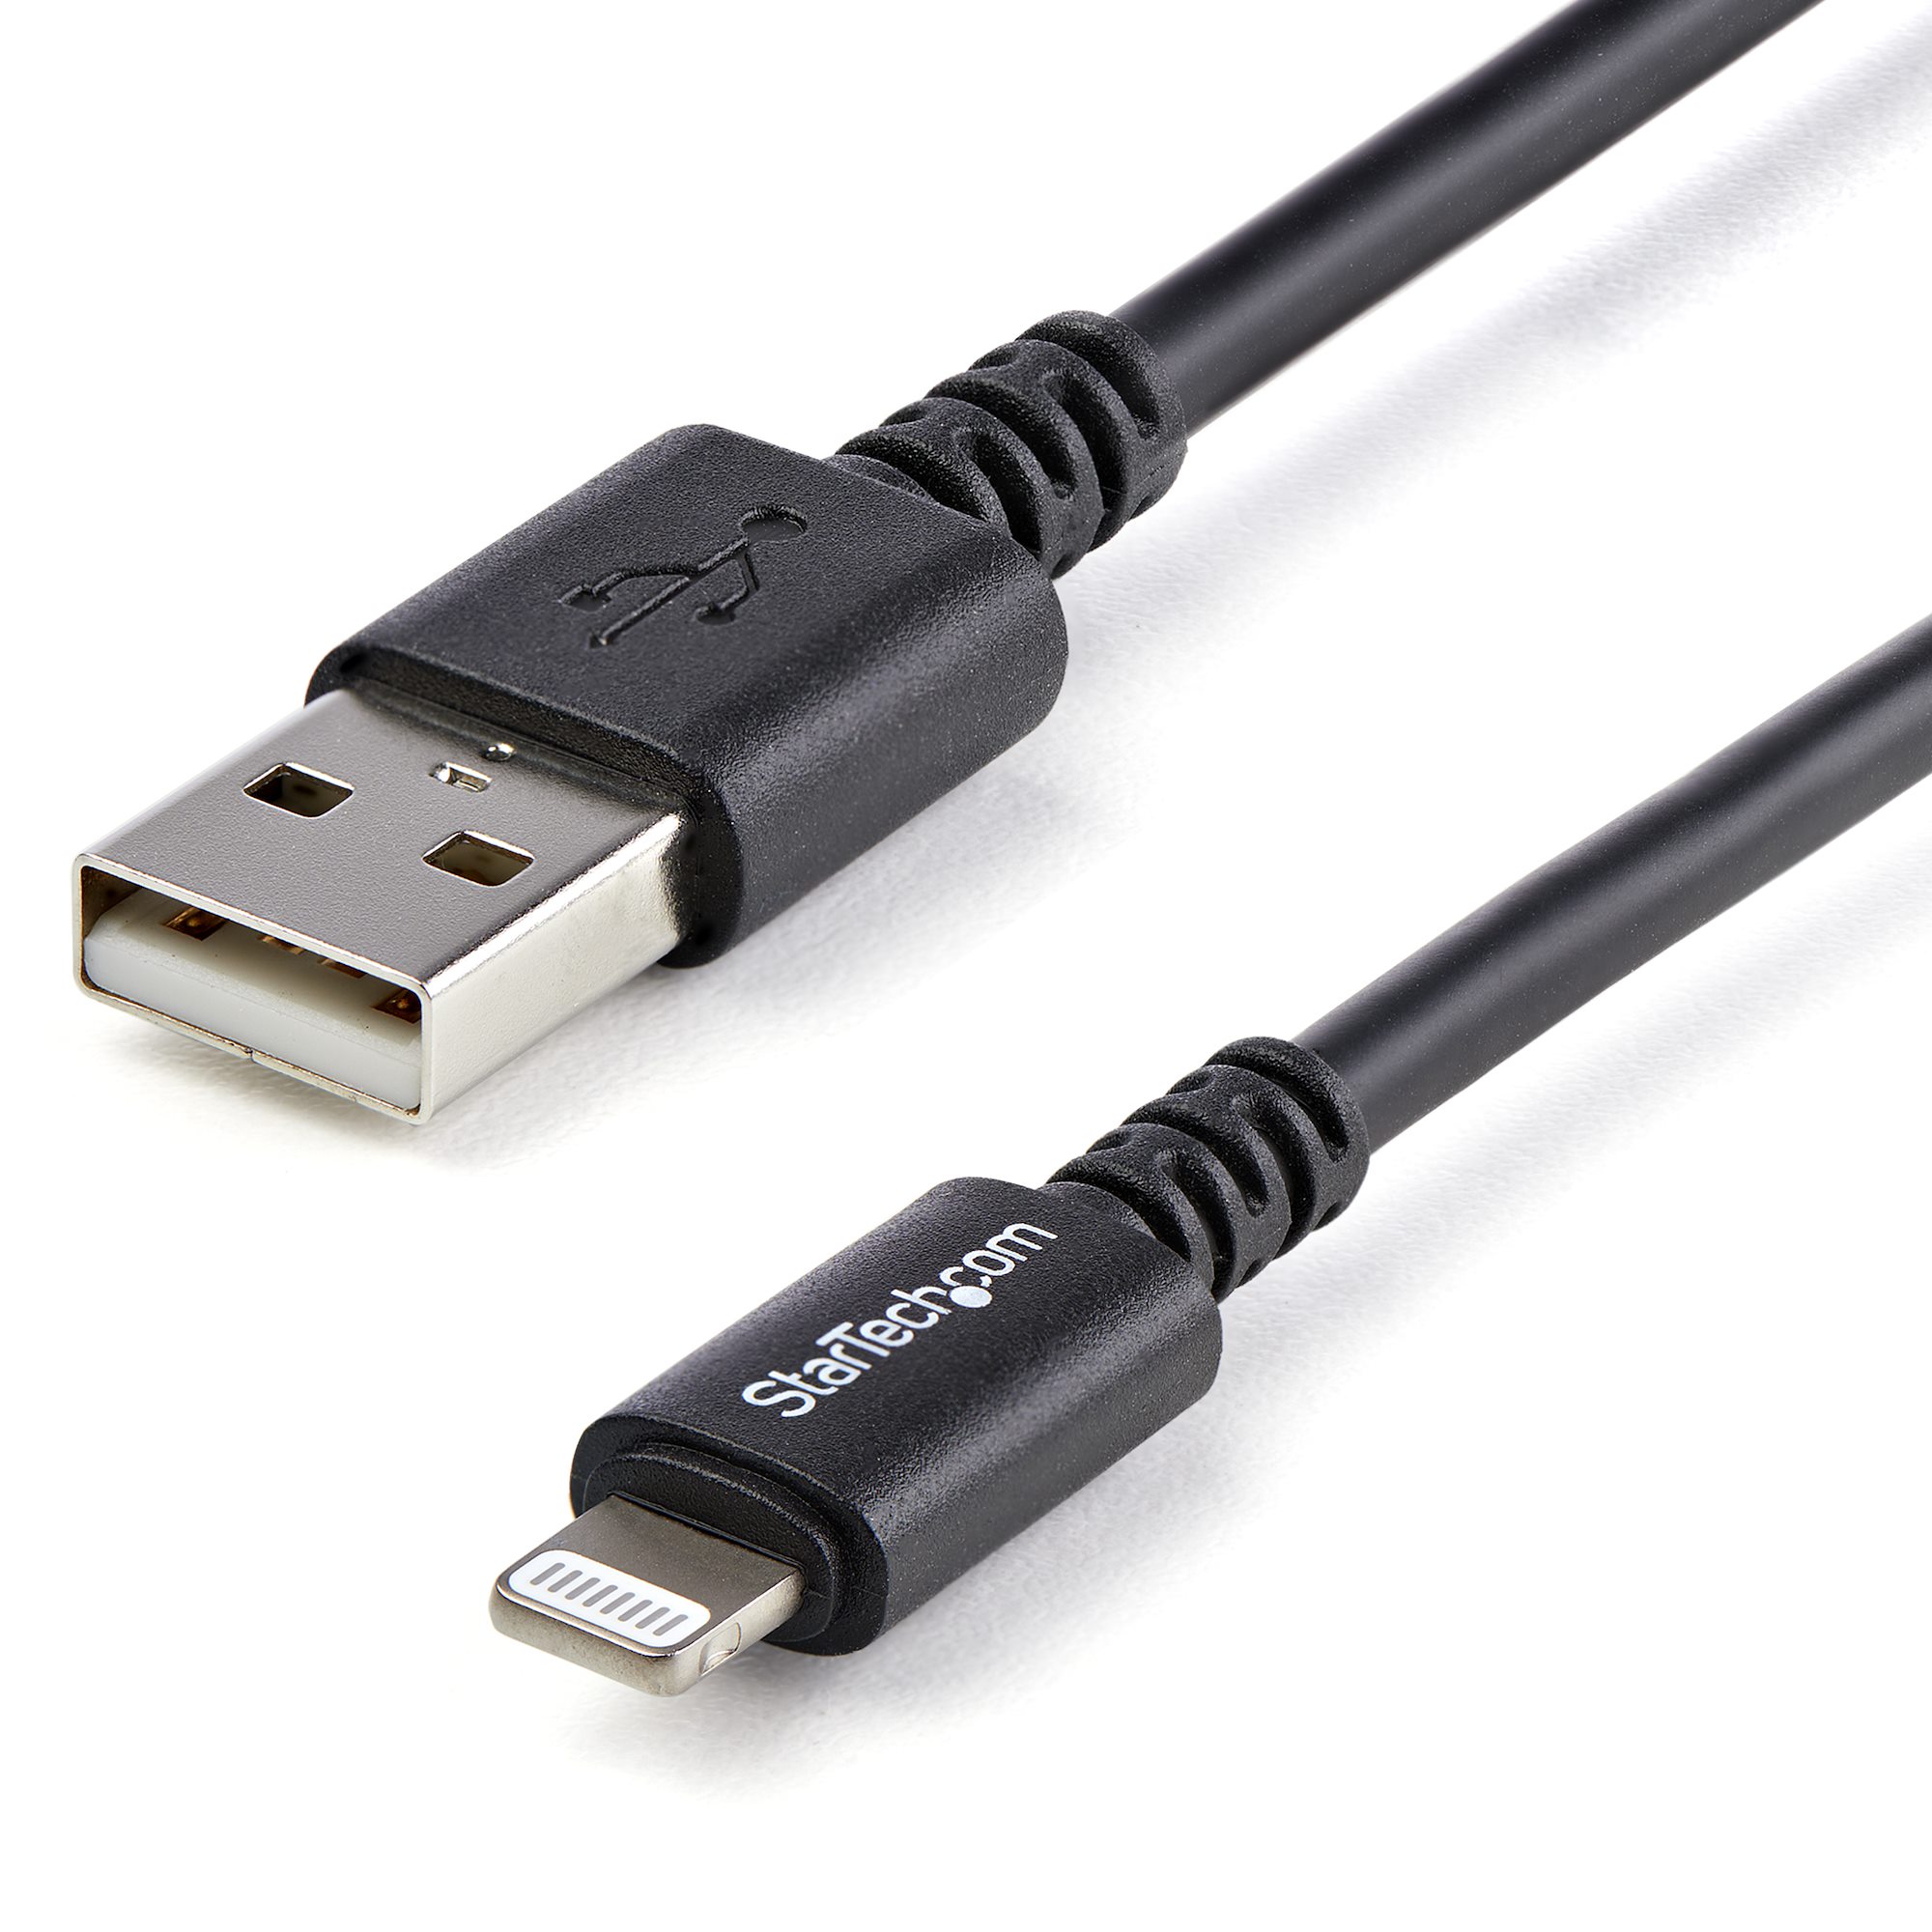 Cable Lightning de 8 Pin a USB A 2.0 para iPod, iPhone y iPad, 1m. Color  Negro.